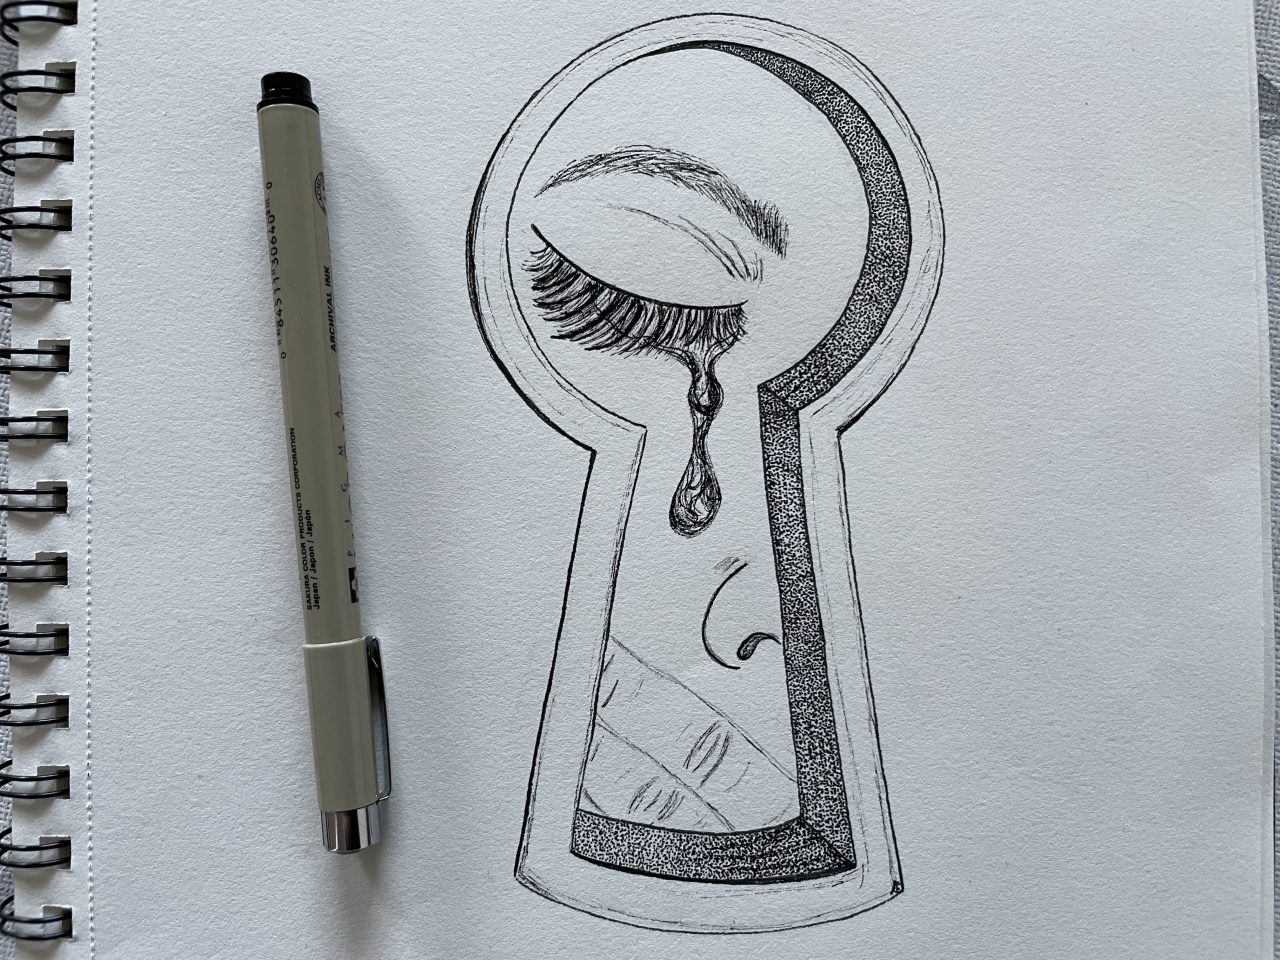 Zeichnung (durchs Schlüsselloch zusehende weinende Person) neben einem Stift 